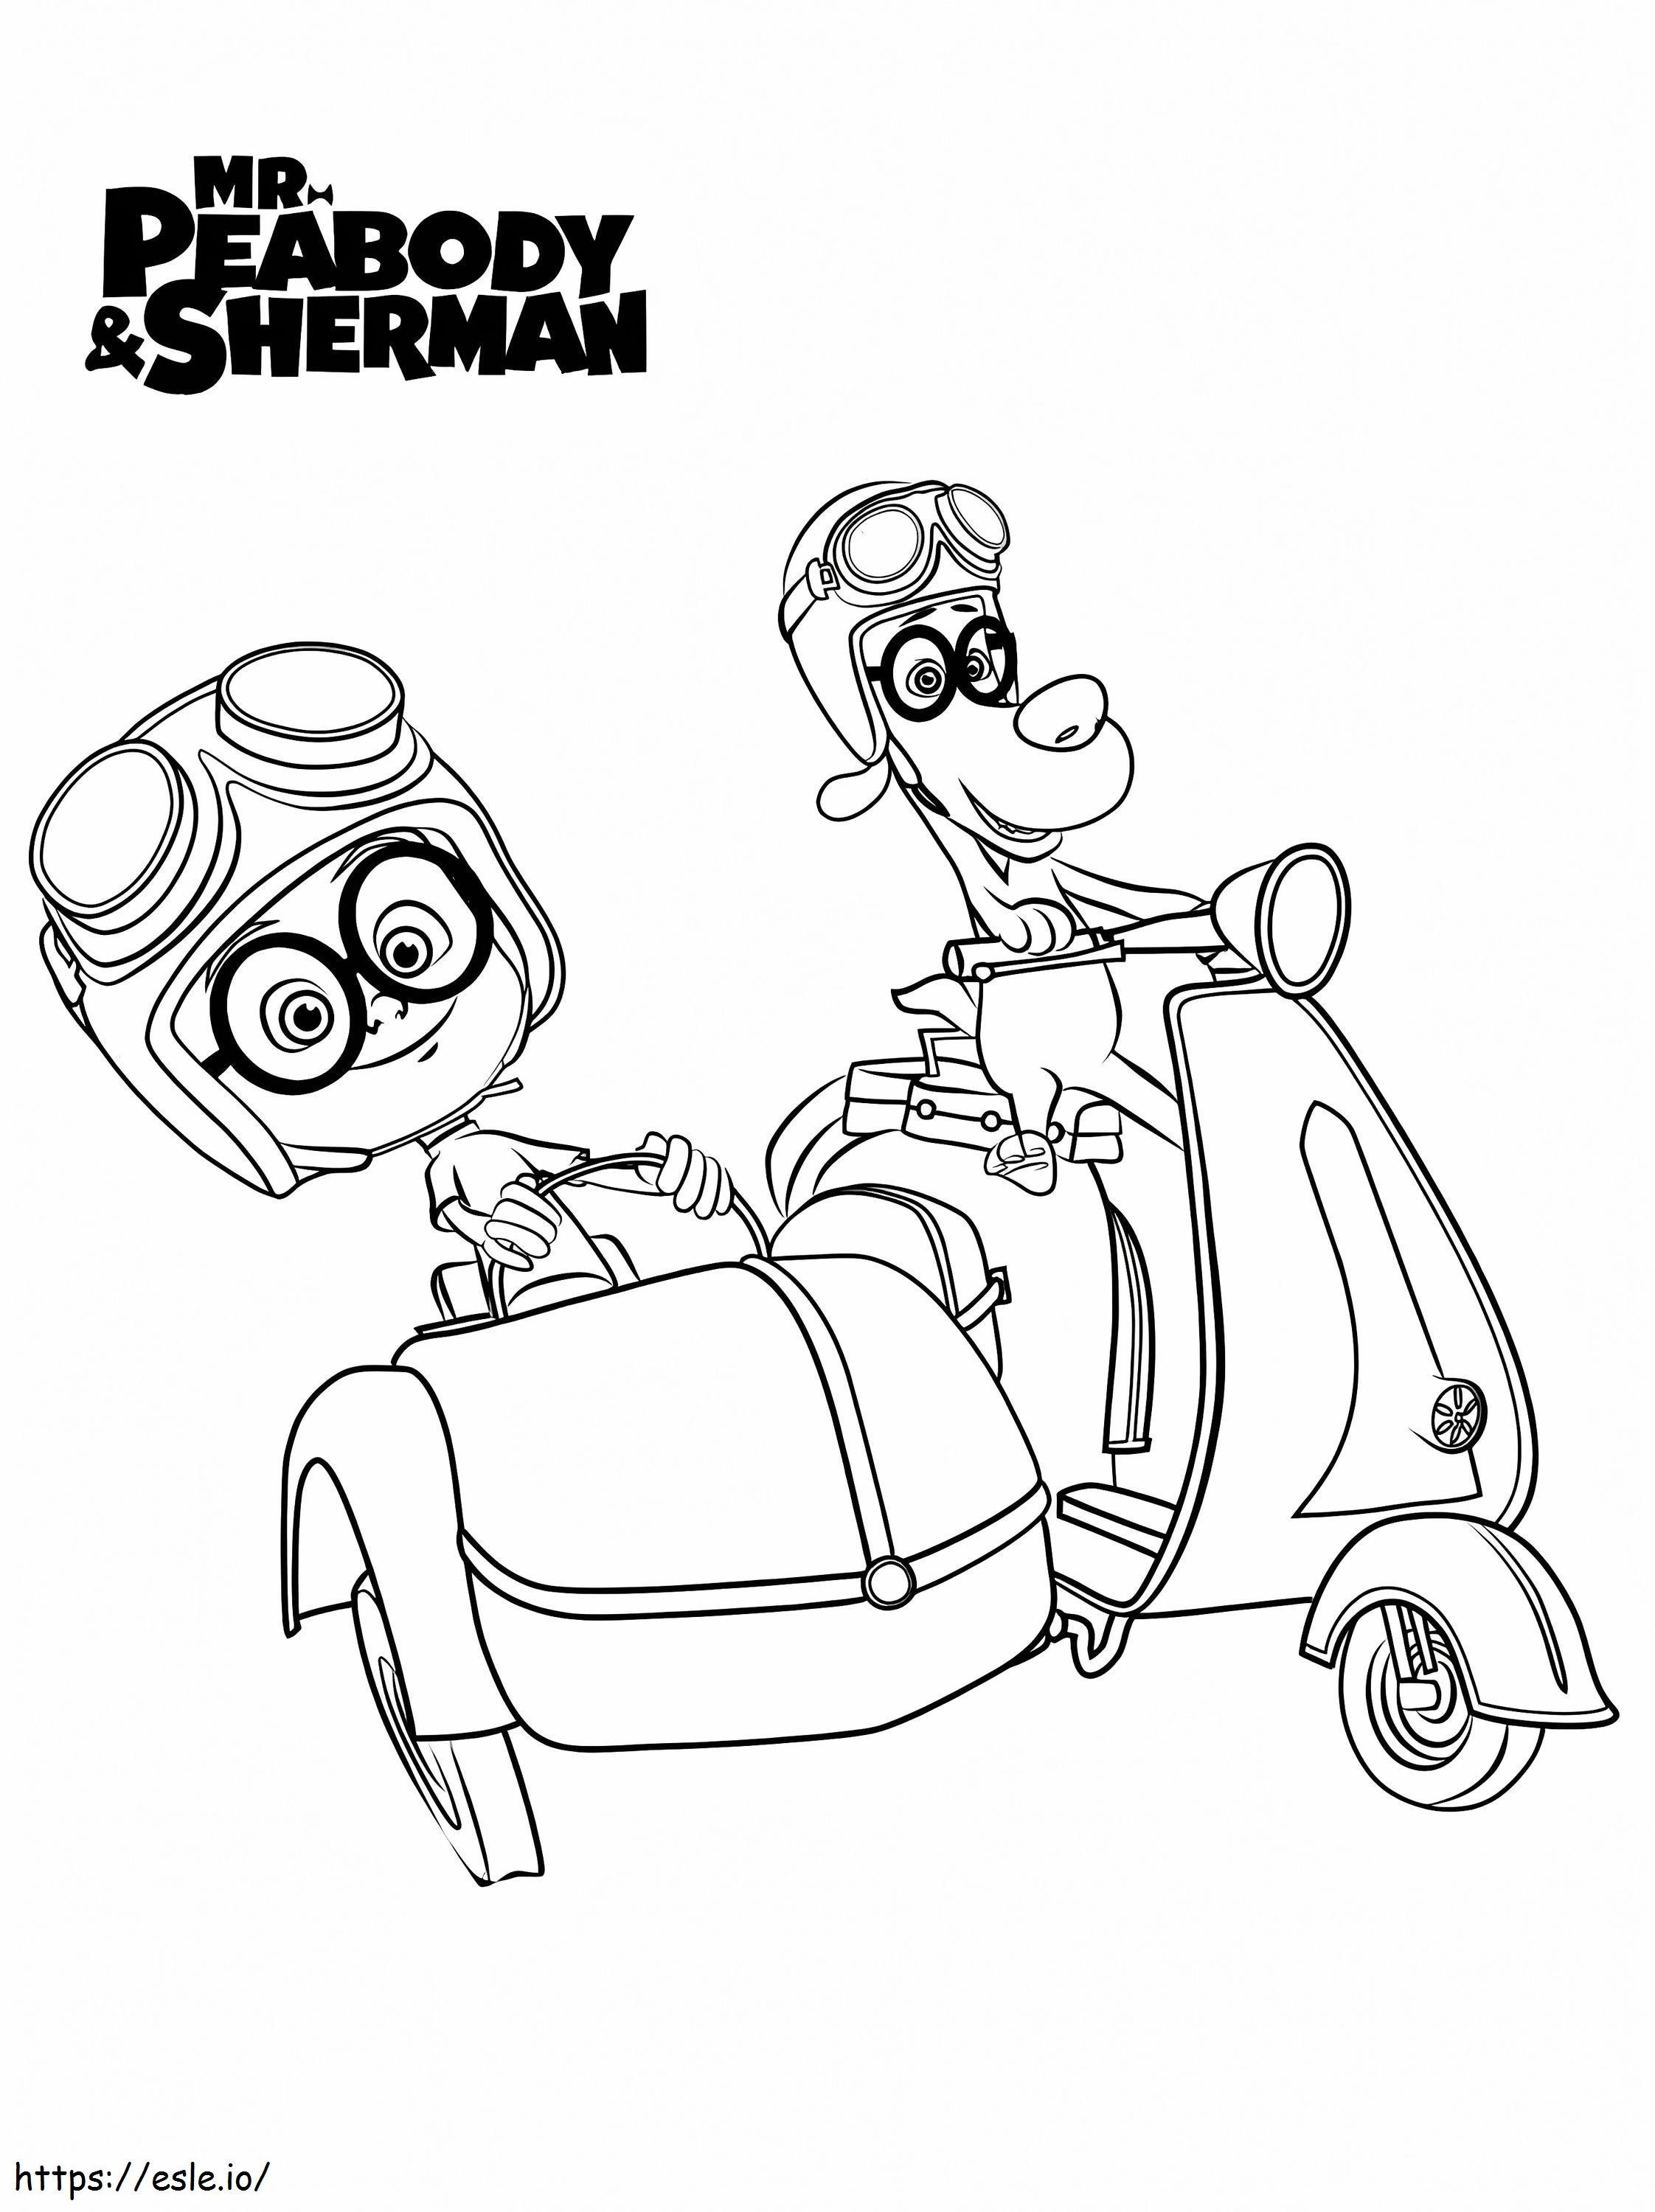 Il signor Peabody e Sherman 6 da colorare